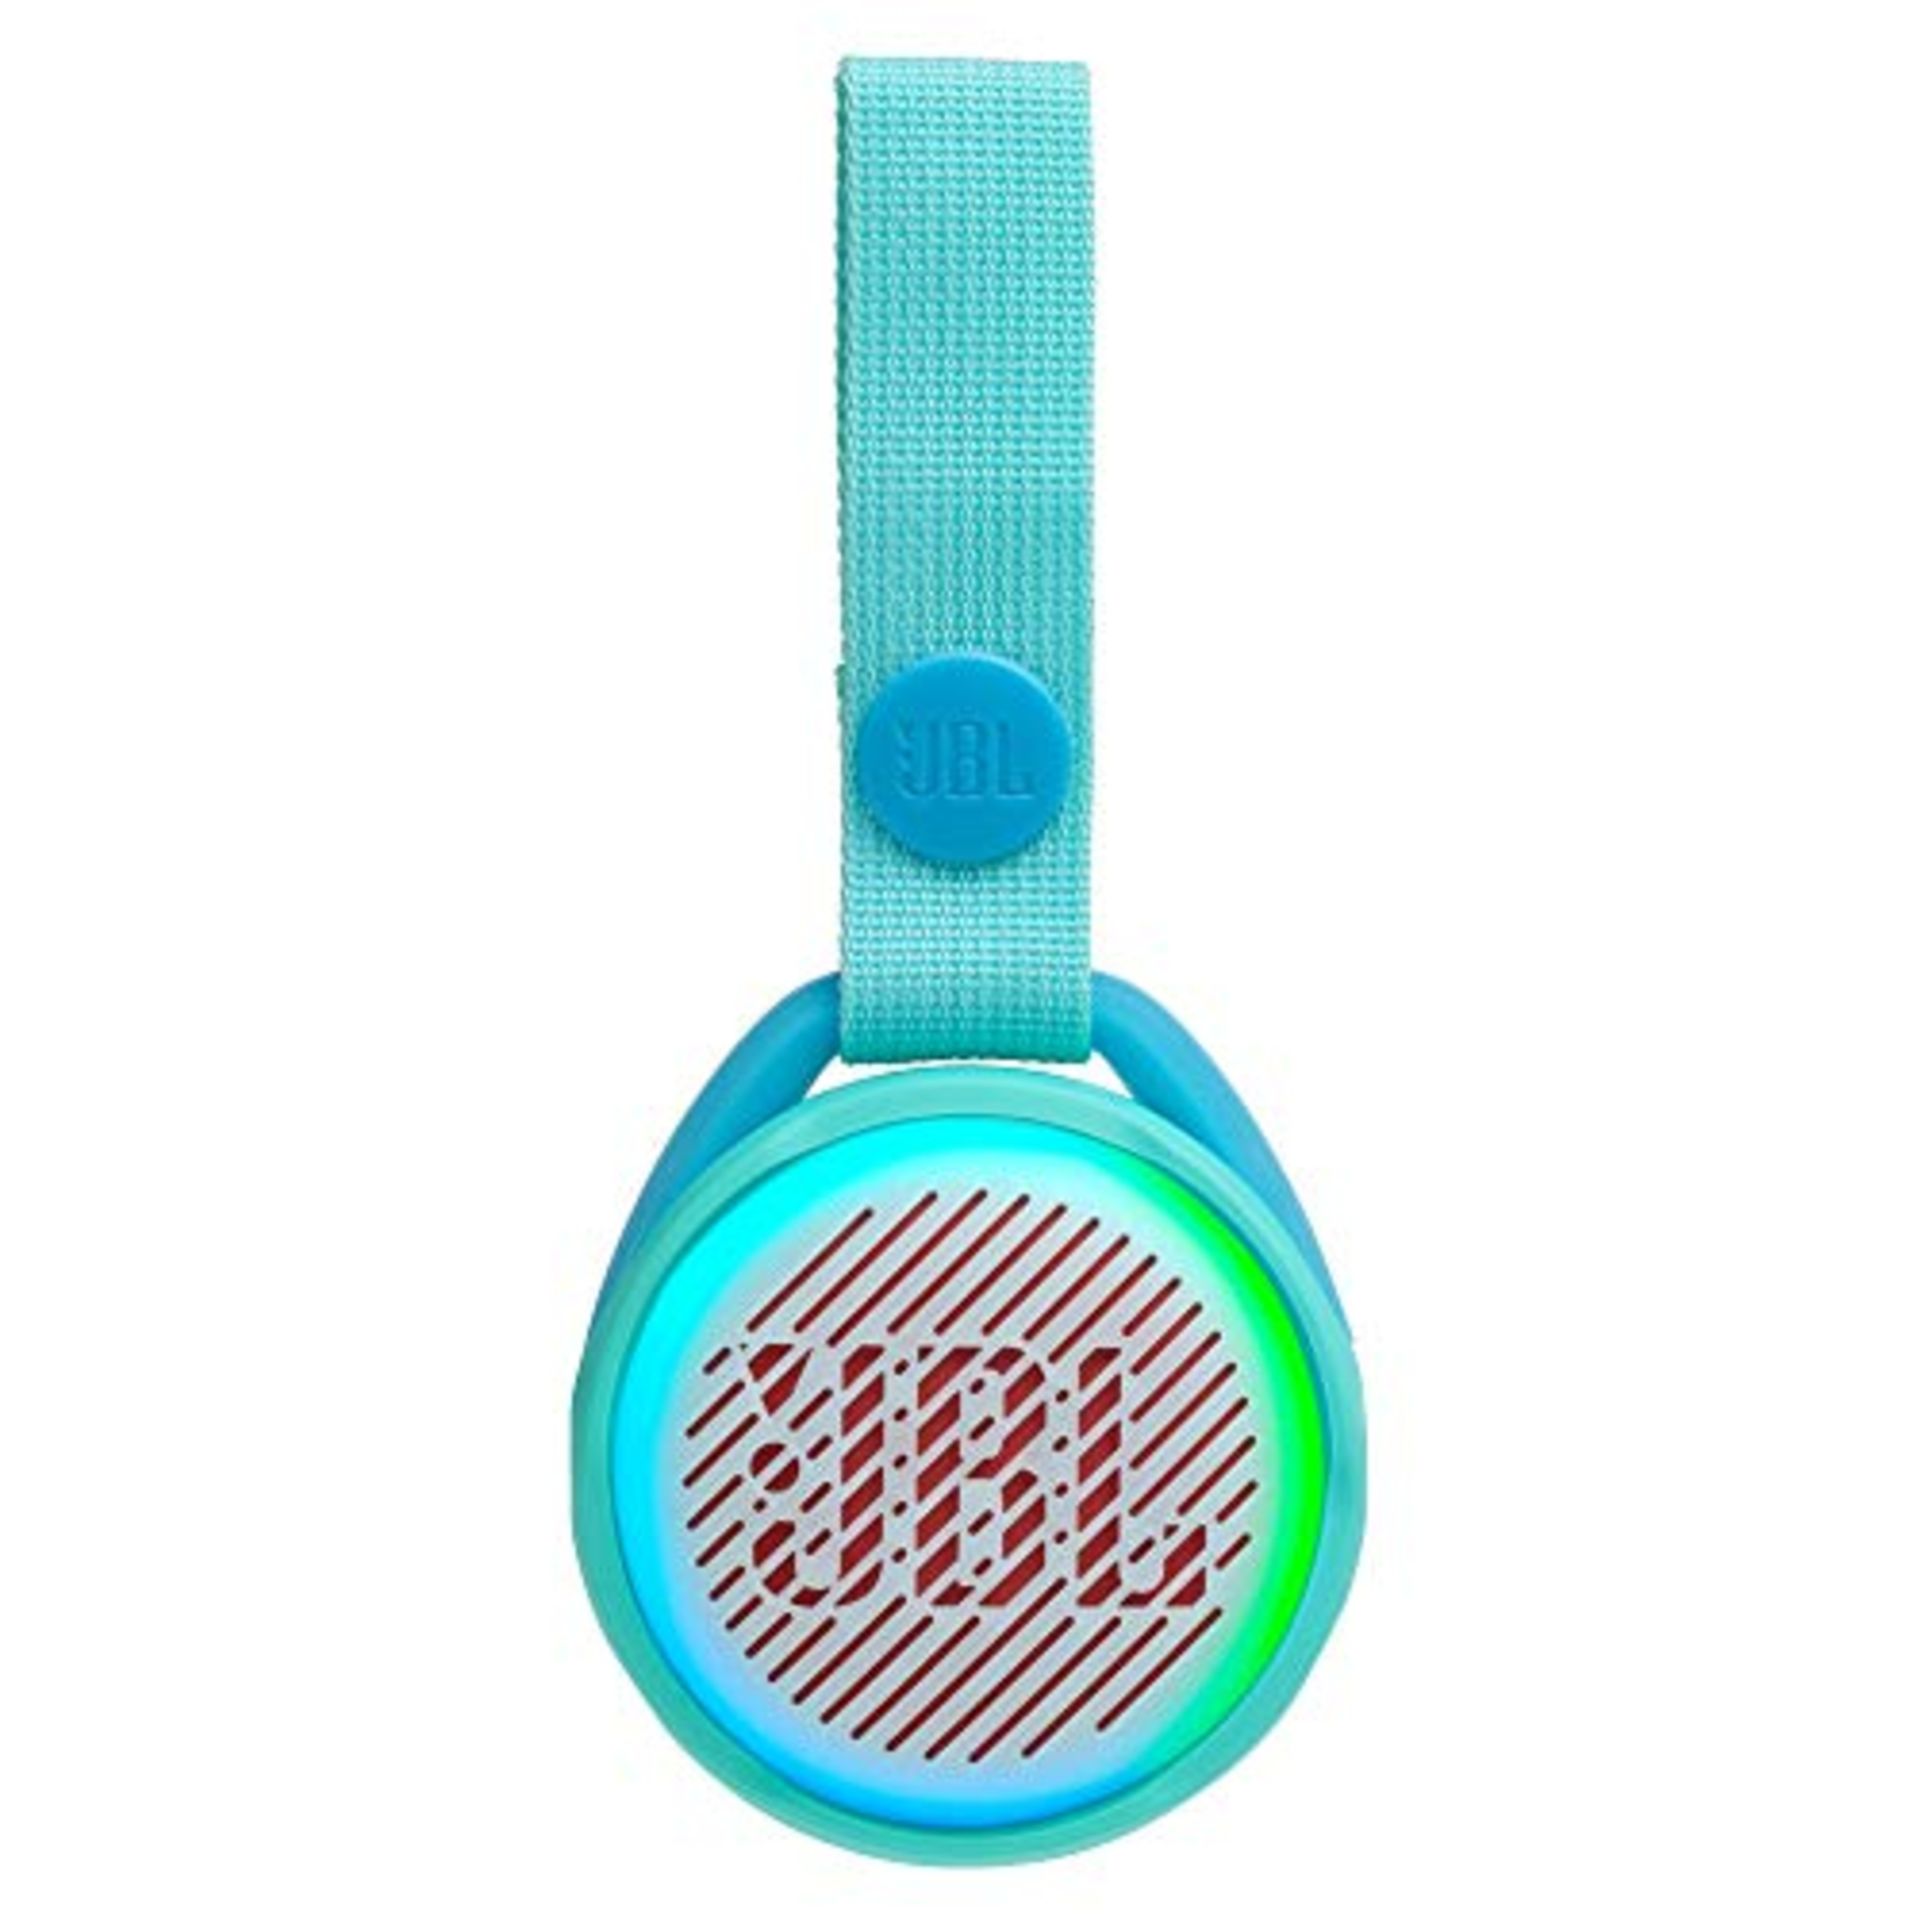 JBL JR Pop mini boombox for kids in turquoise - trendy, waterproof Bluetooth speaker w